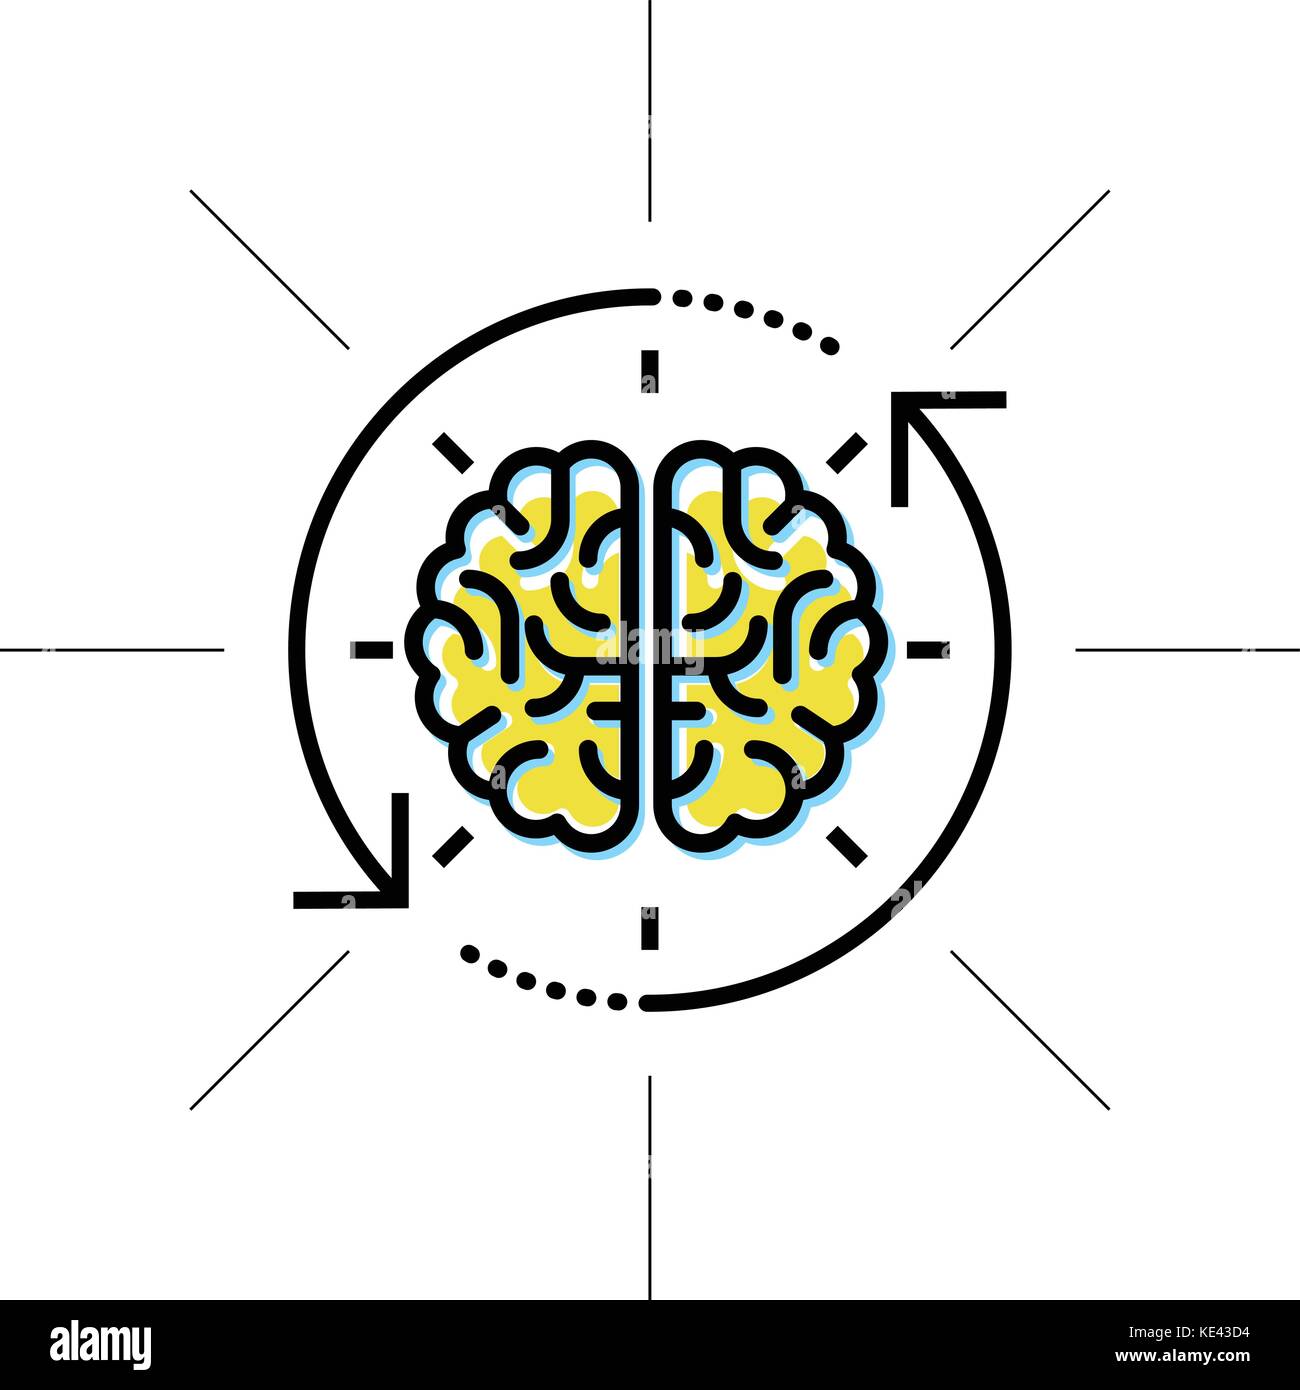 Gehirn in Sicht - Intellekt, Forschung und Wissen Konzept Stock Vektor